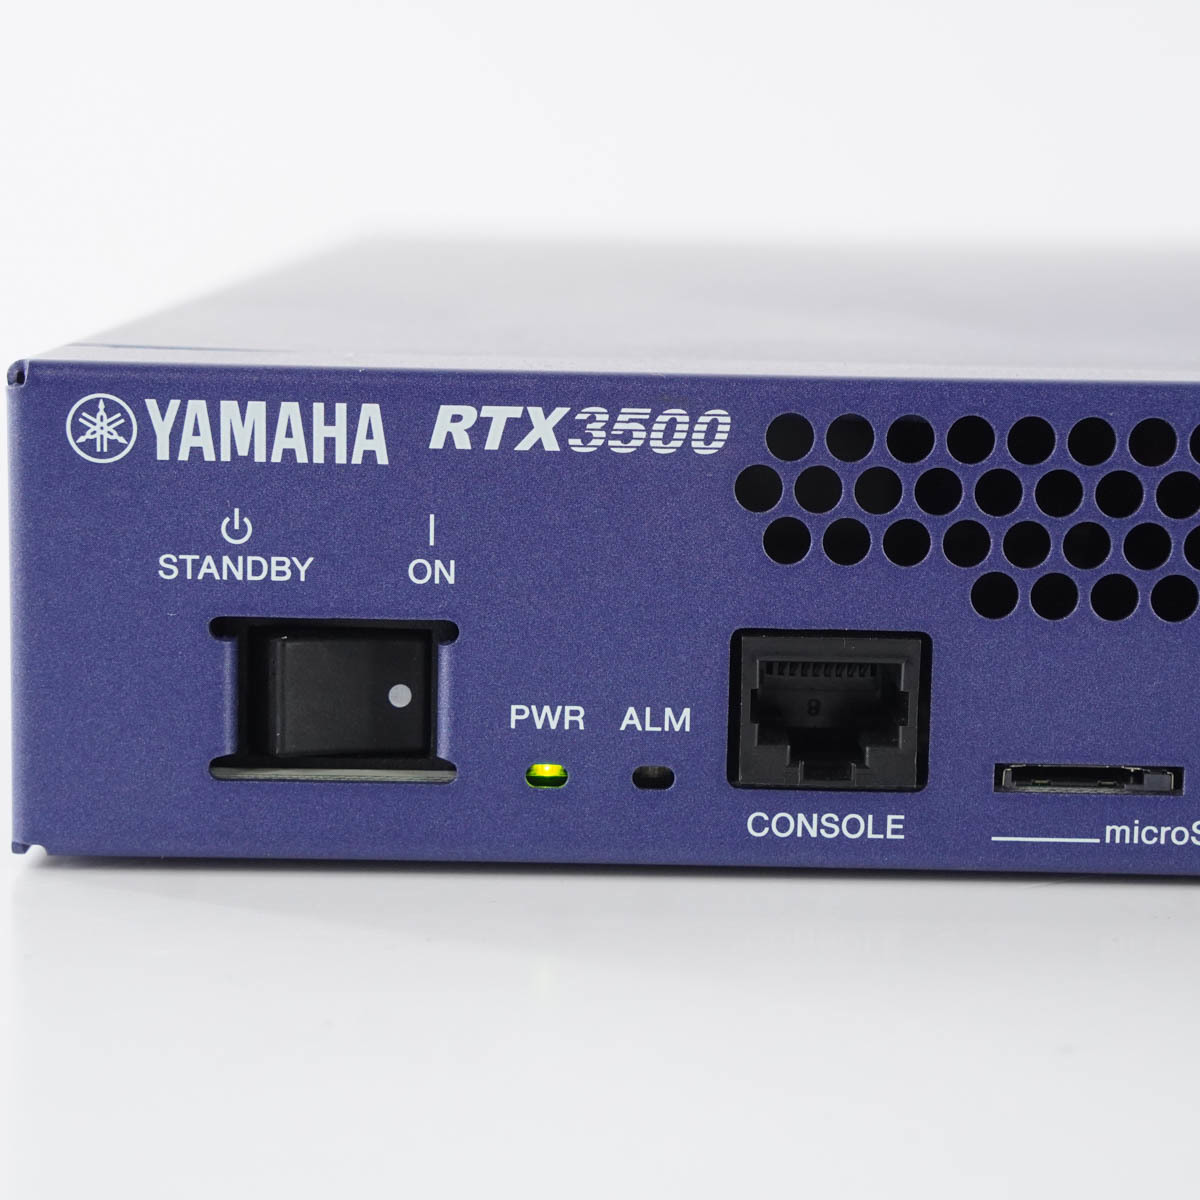 [PG] 8日保証 初期化済 RTX3500 YAMAHA ヤマハ ギガアクセスVPNルーター 電源コード[05533-0810]_画像4